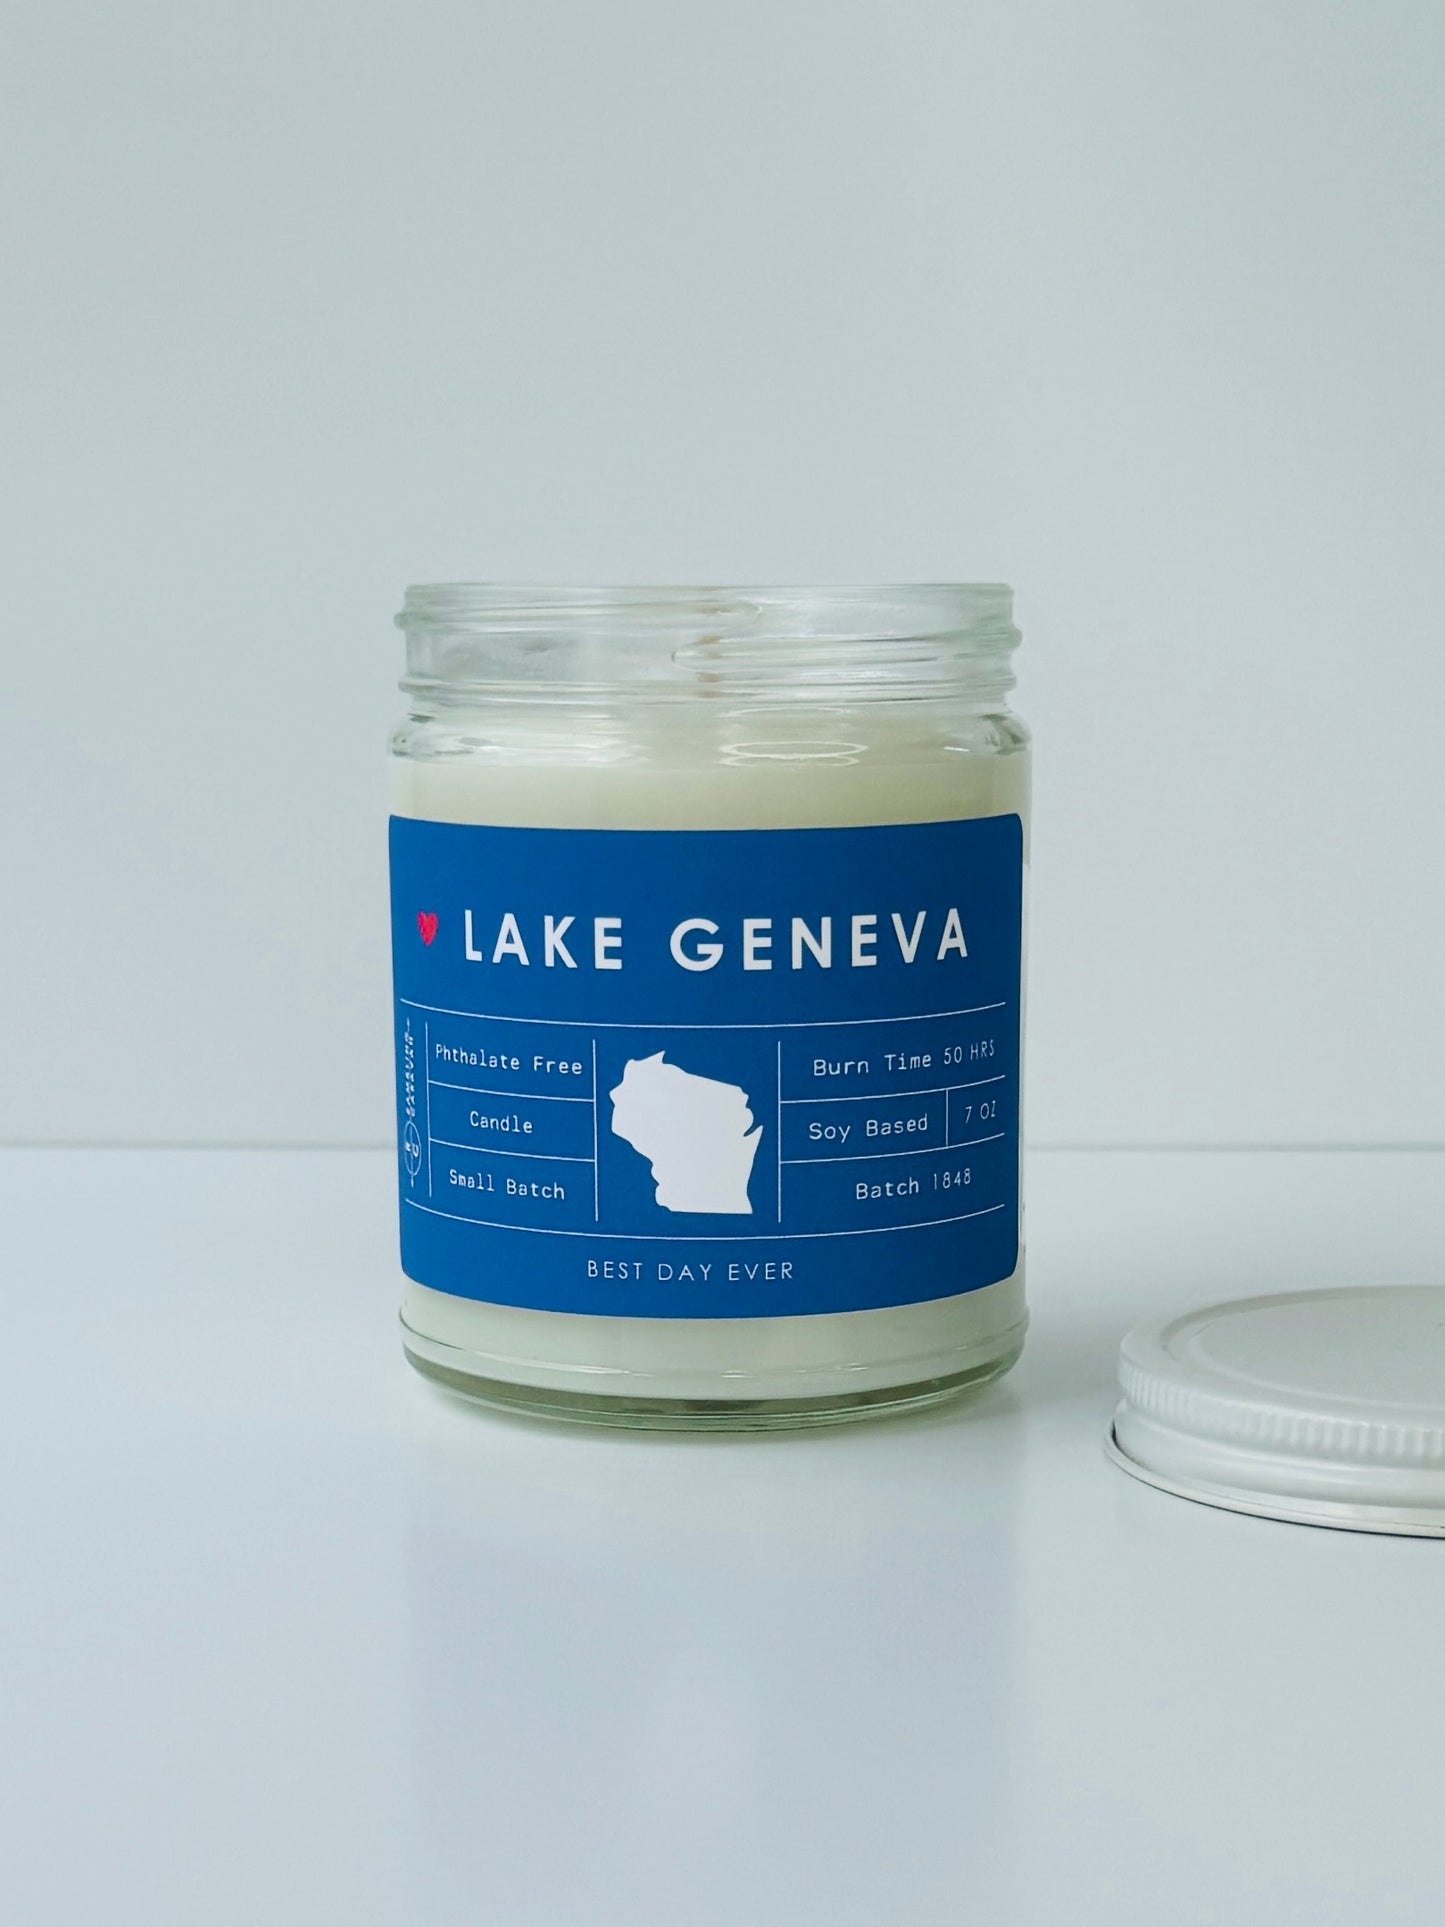 Lake Geneva, Wisconsin Candle